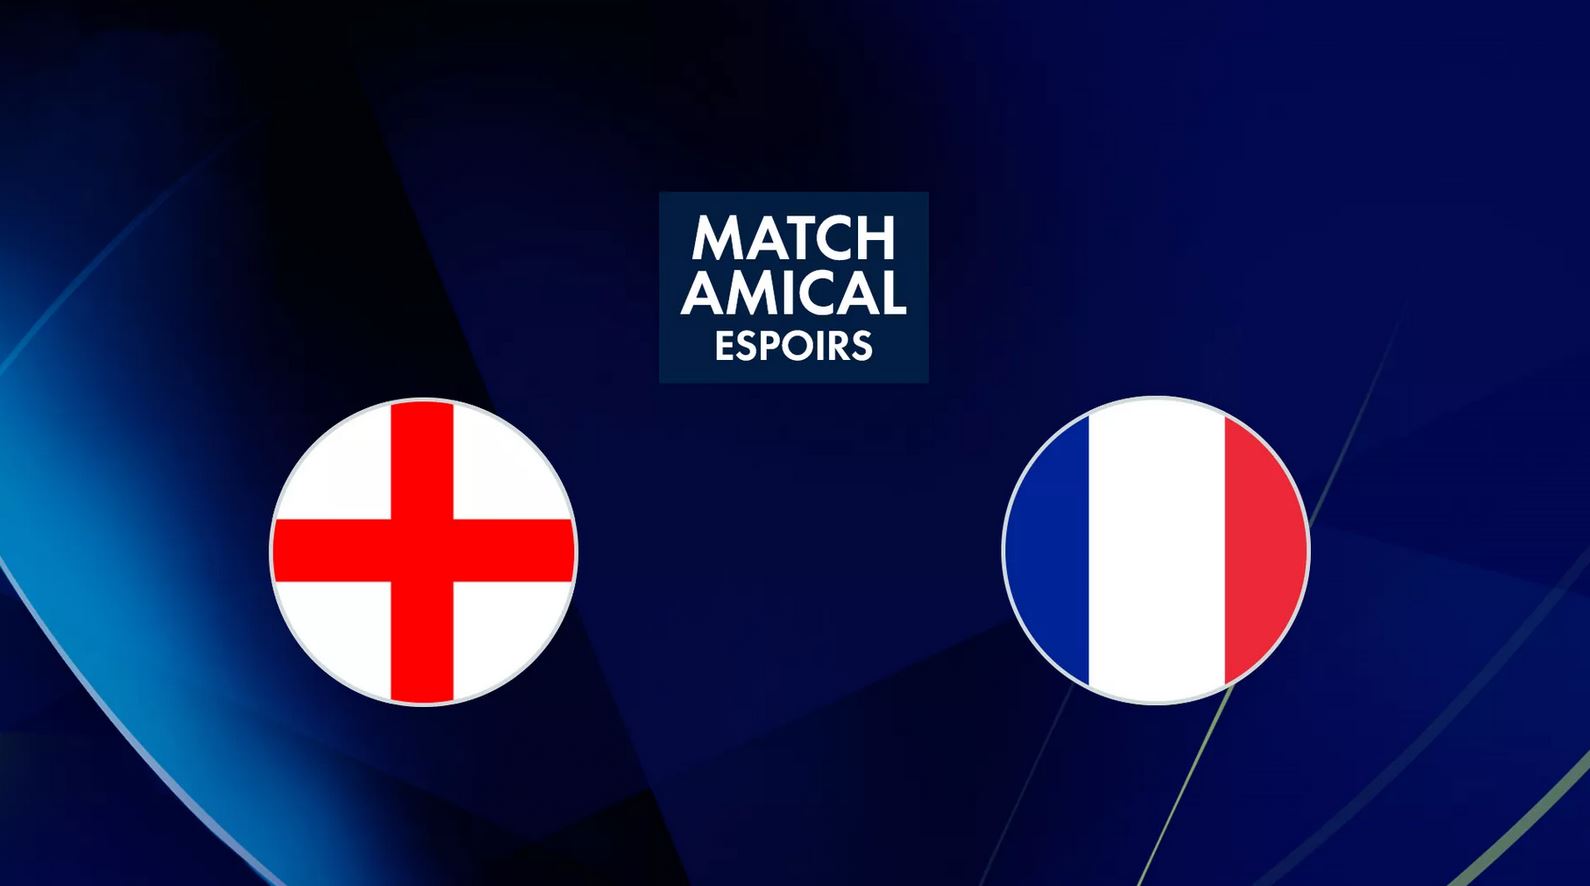 Angleterre / France (TV/Streaming) Sur quelles chaînes et à quelle heure voir le match des Espoirs ?